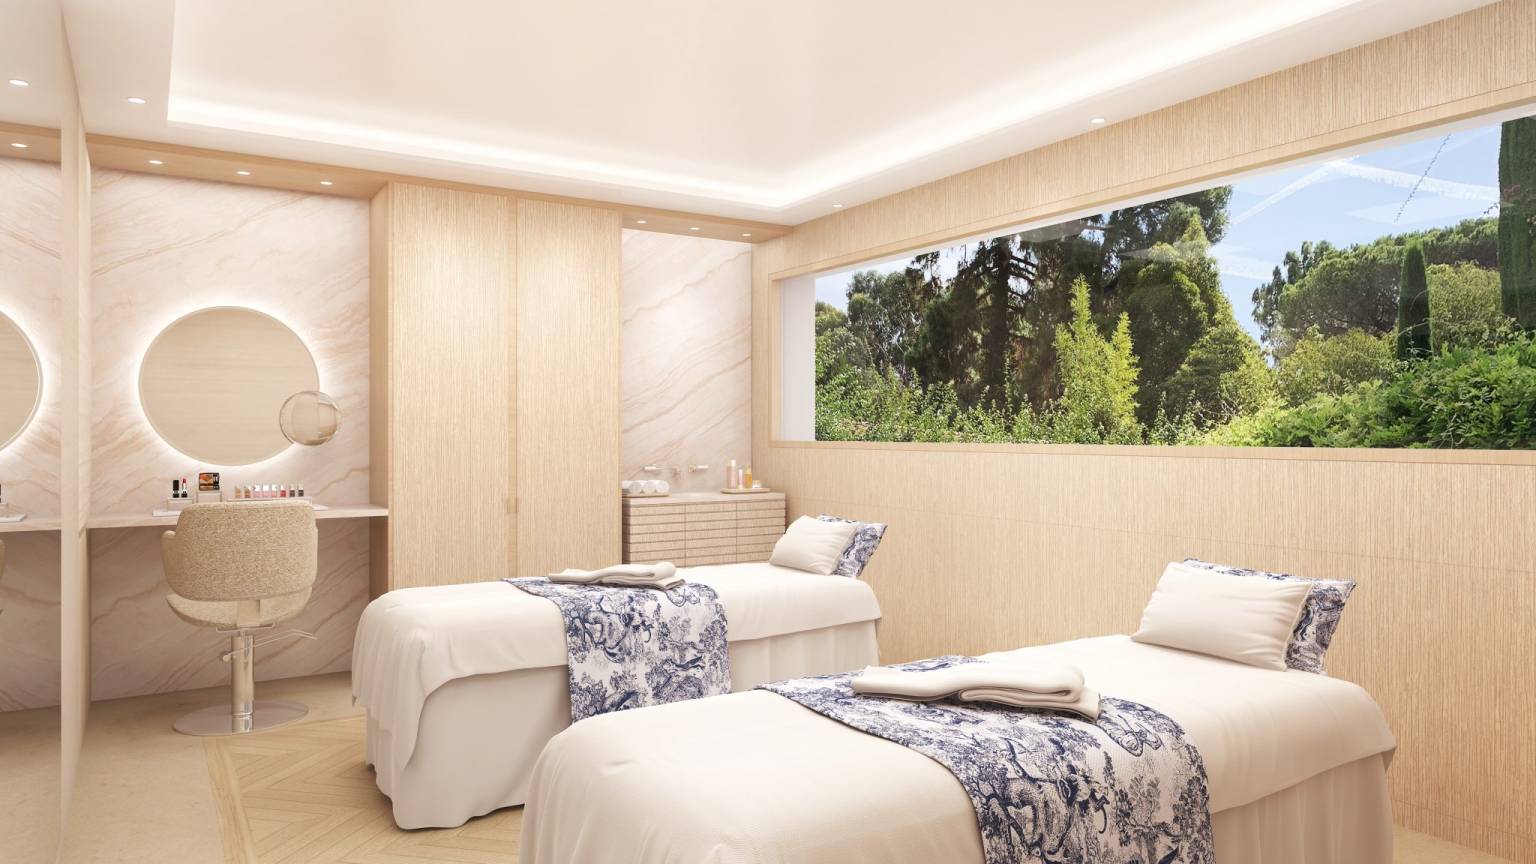 迪奥在南法度假胜地昂蒂布的著名酒店推出全新水疗中心